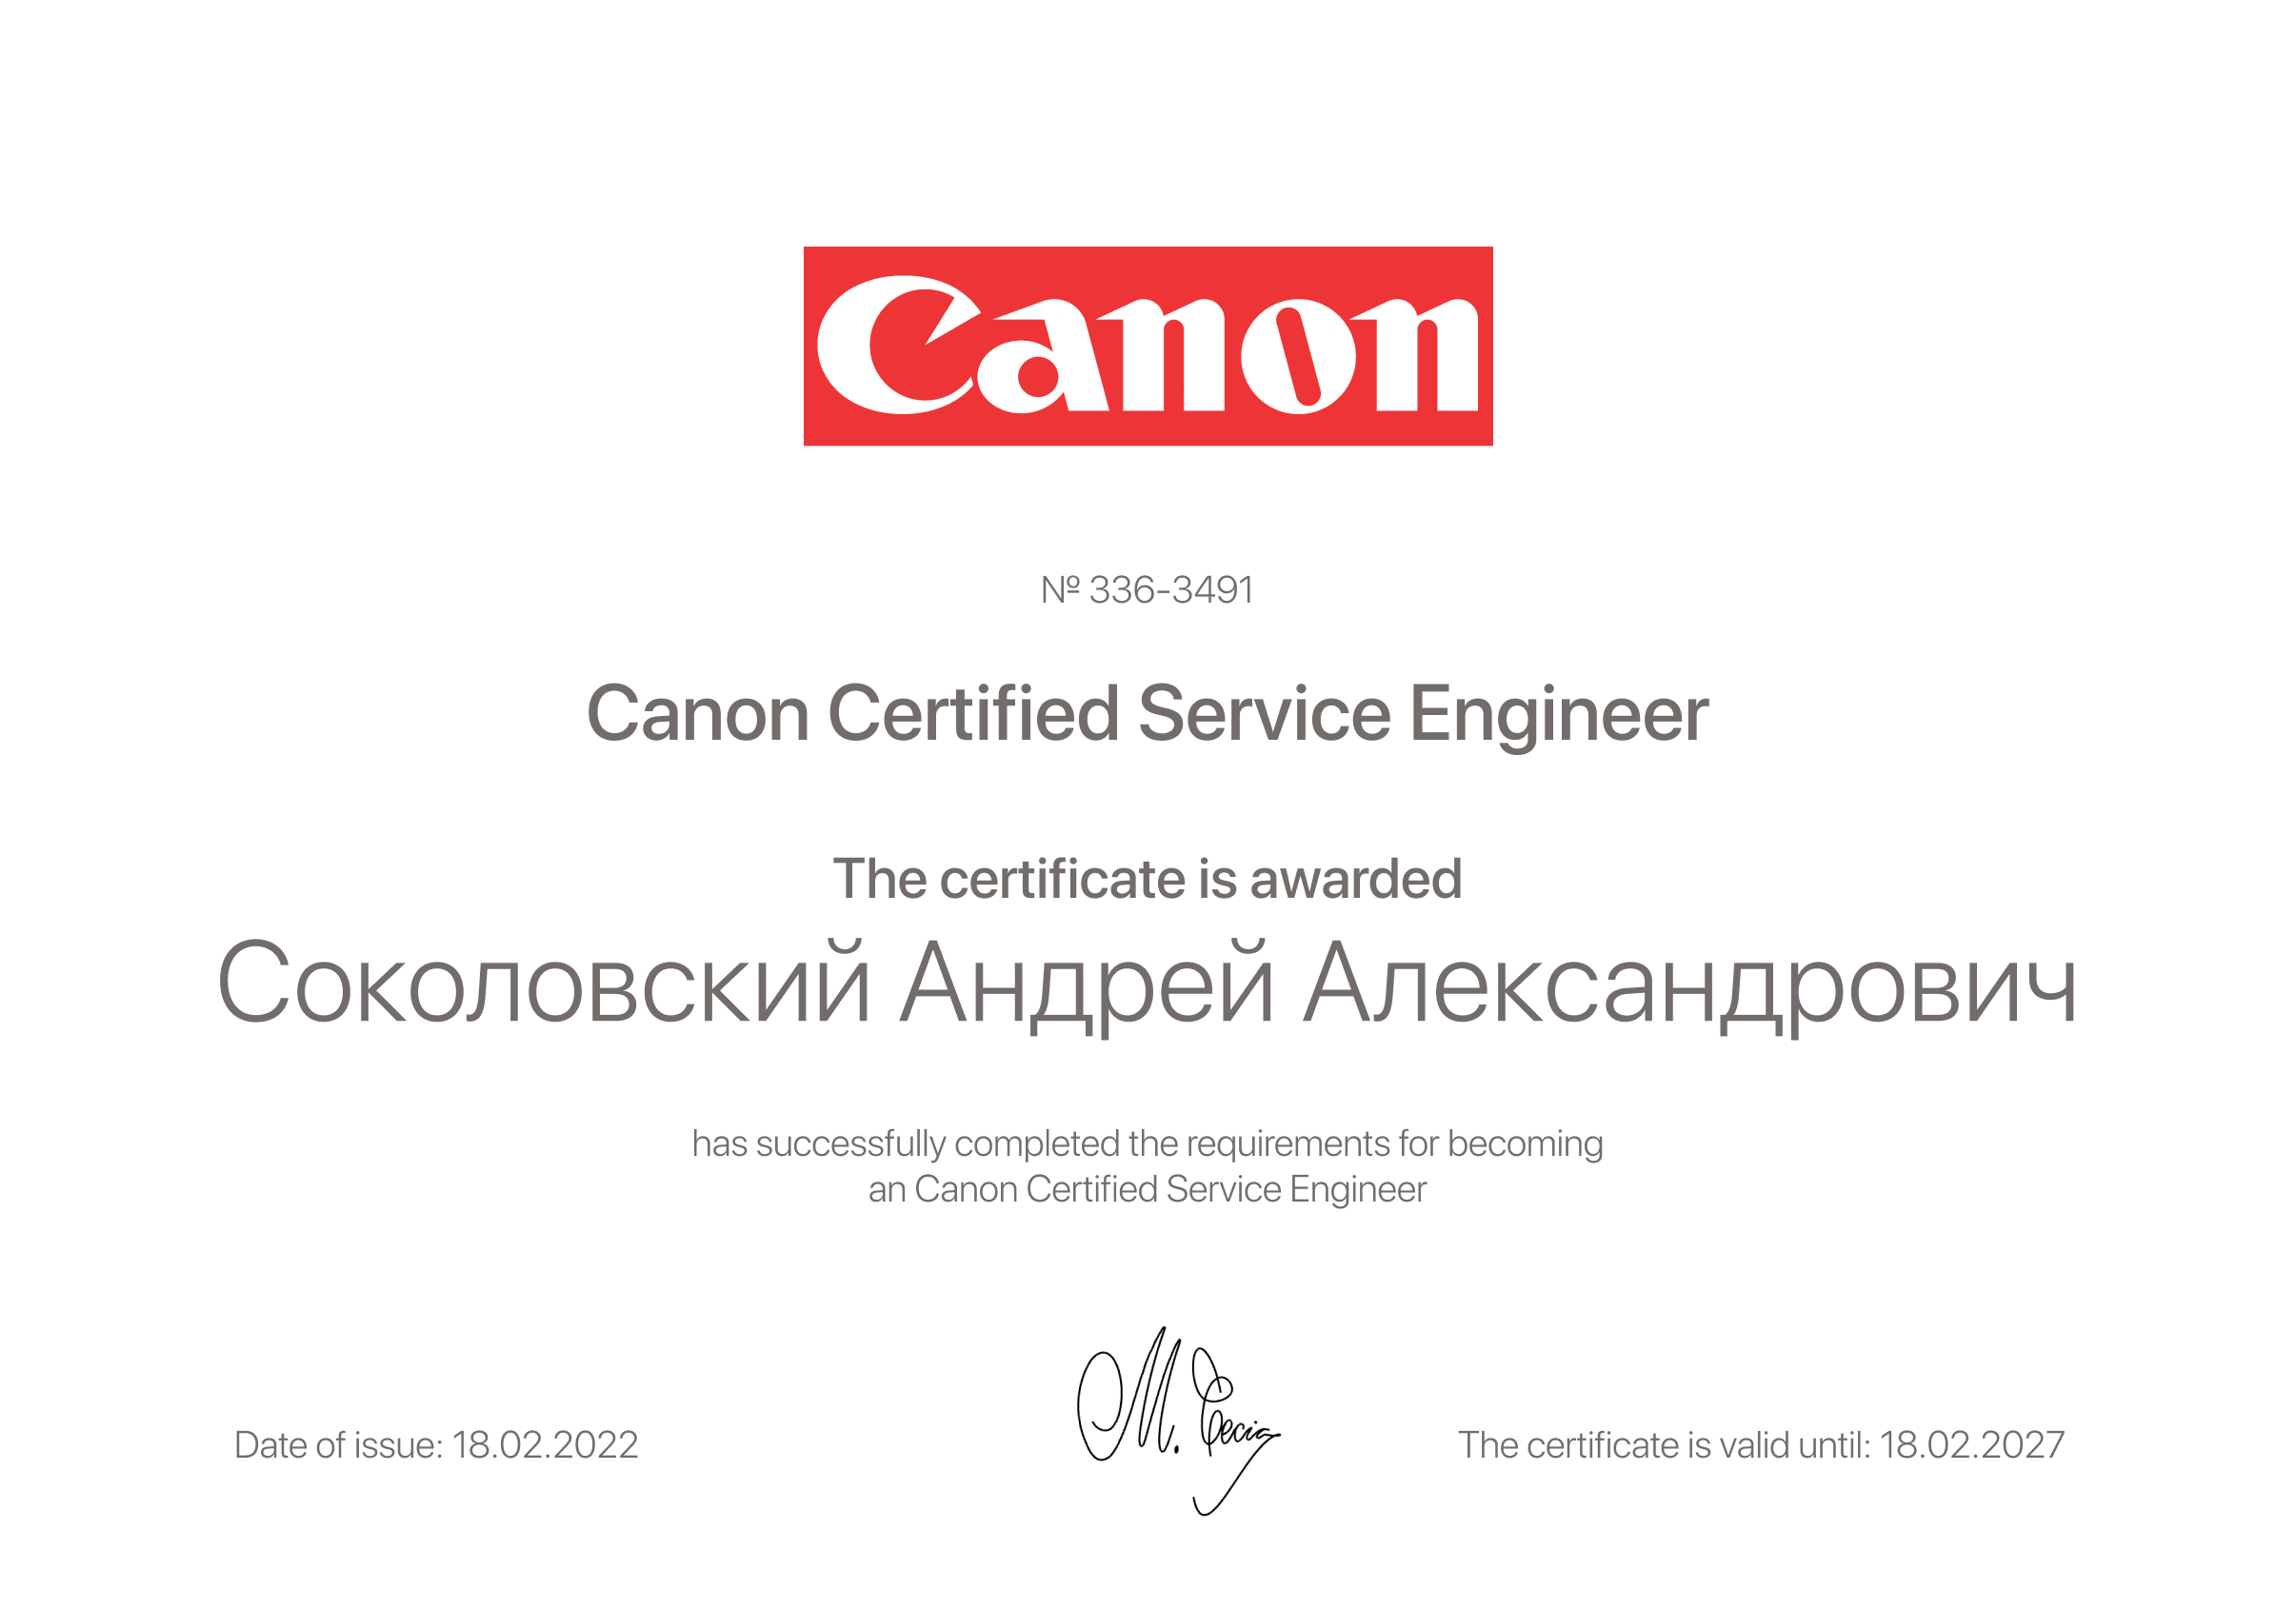 Canon сервисные центры canon support ru